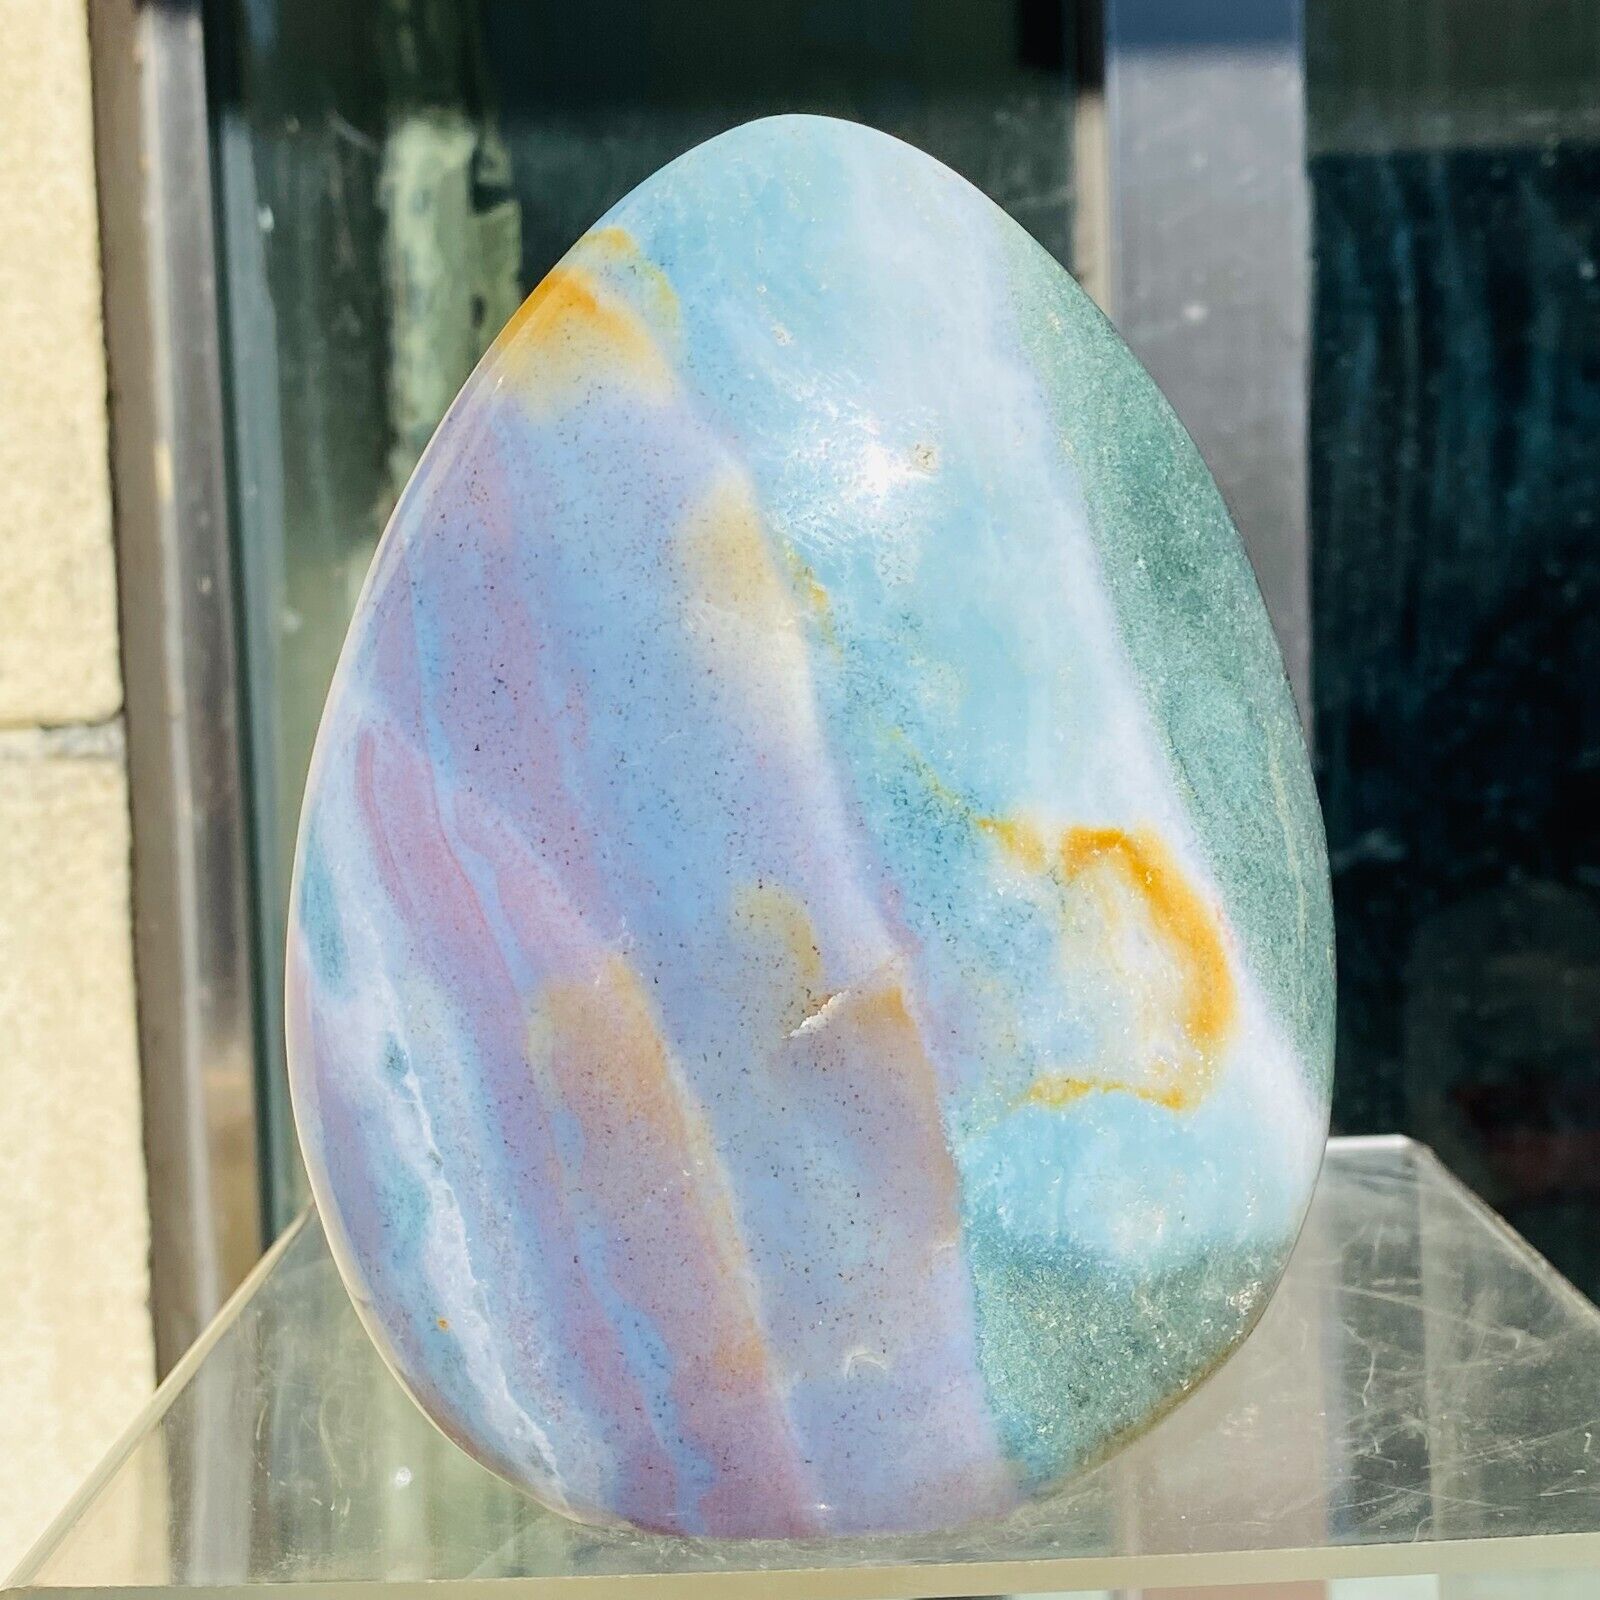 1510g Natural Colourful Ocean Jasper Crystal Polished Display Specimen Healing